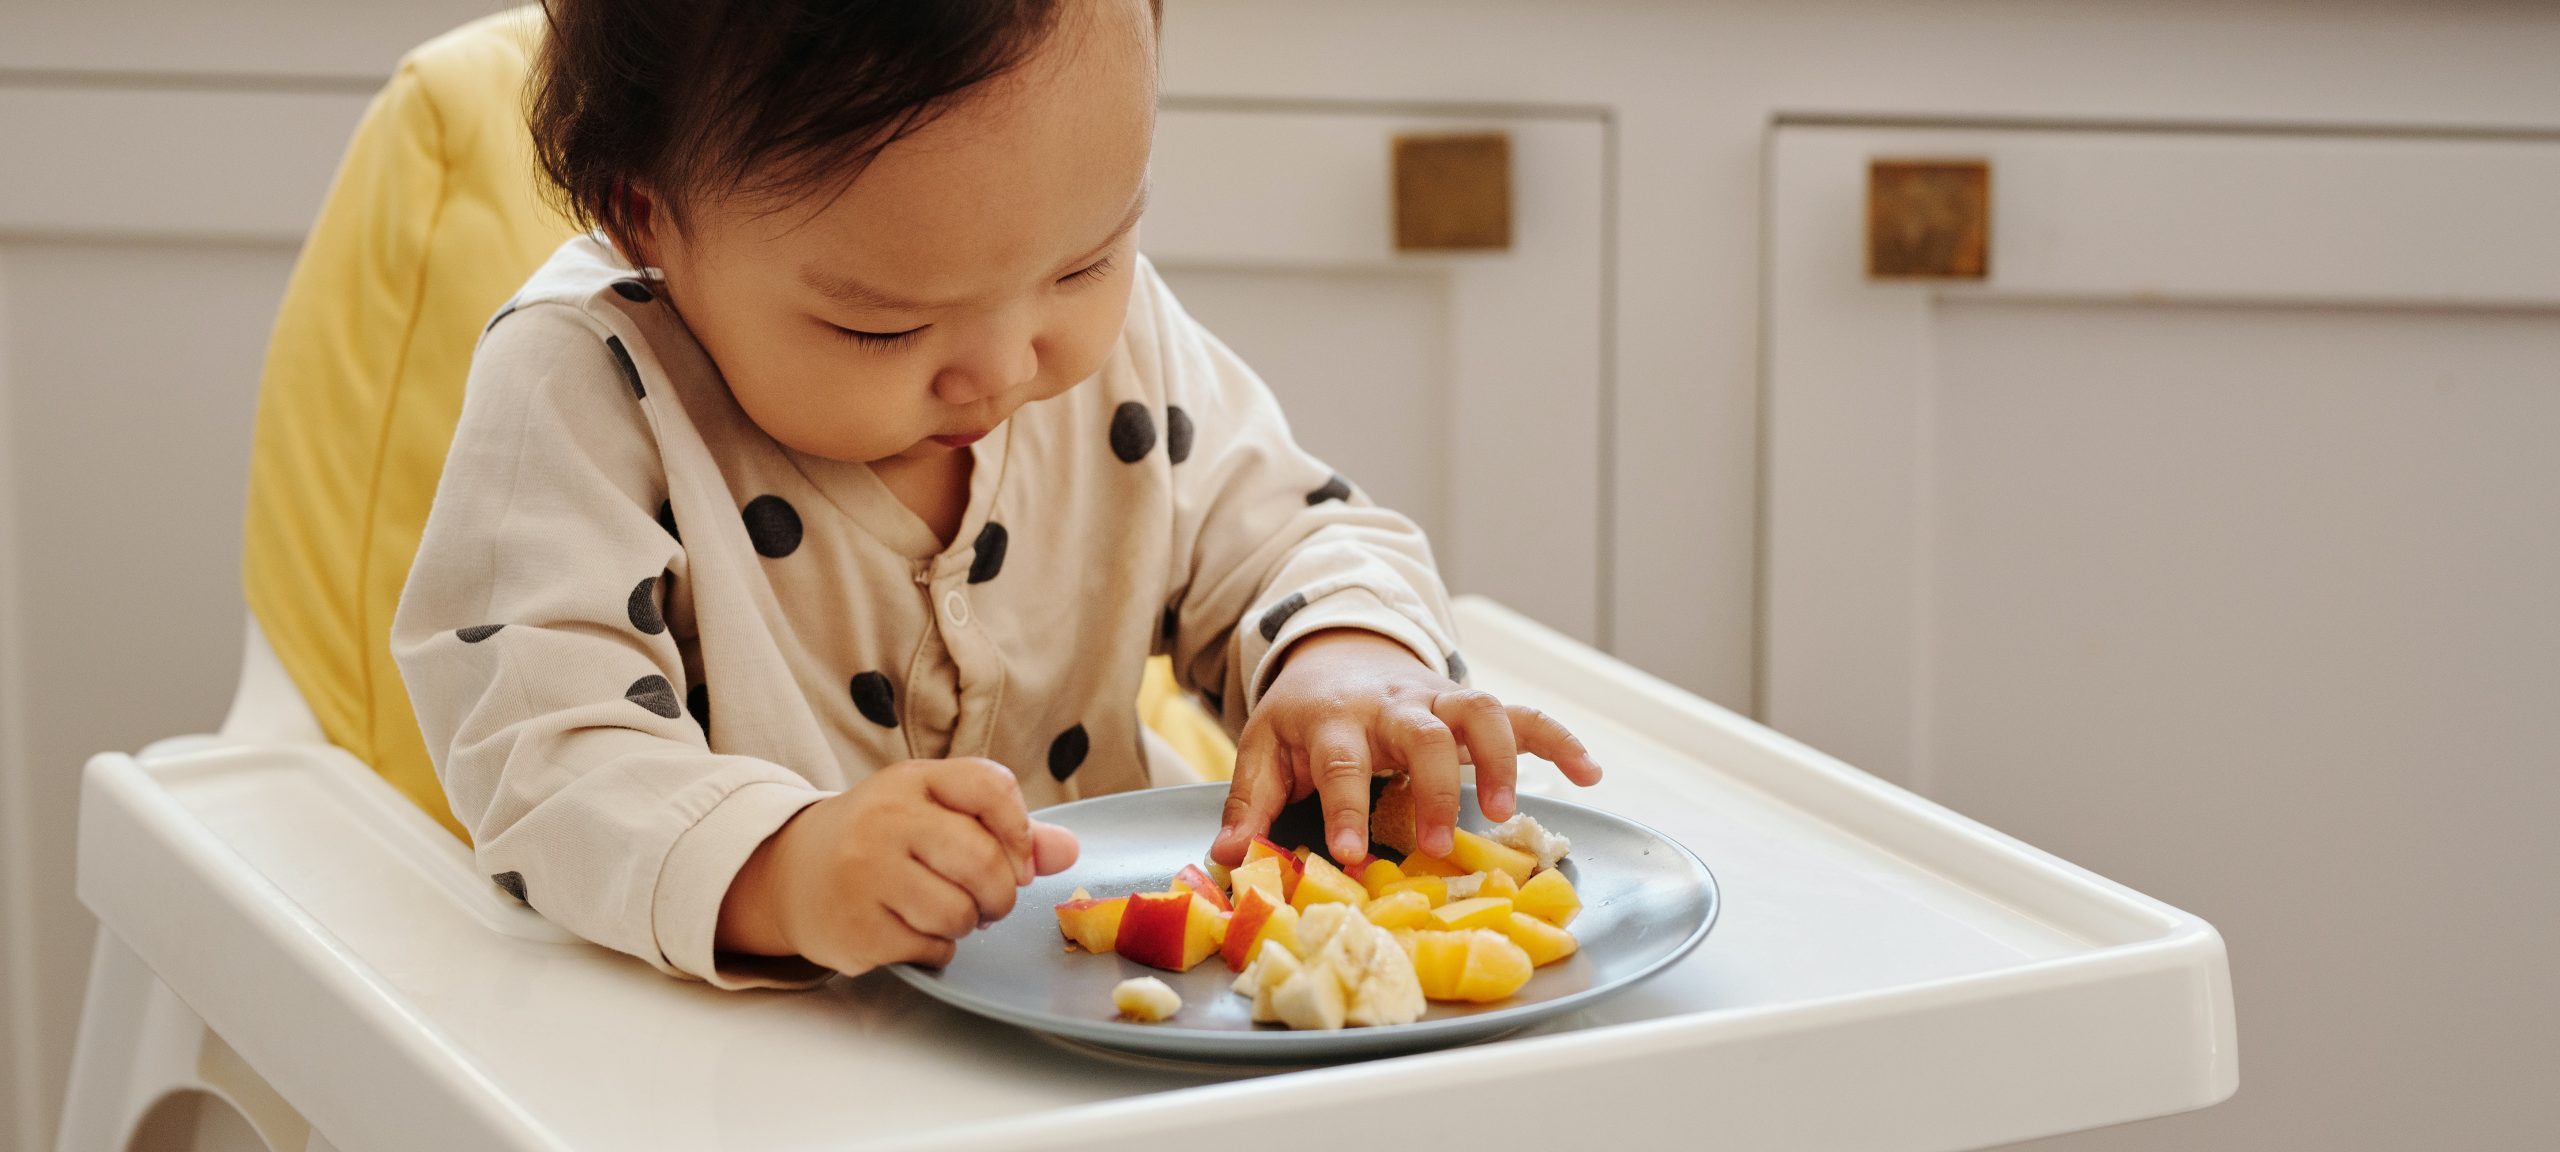 La diversification alimentaire de bébé : conseils pratiques